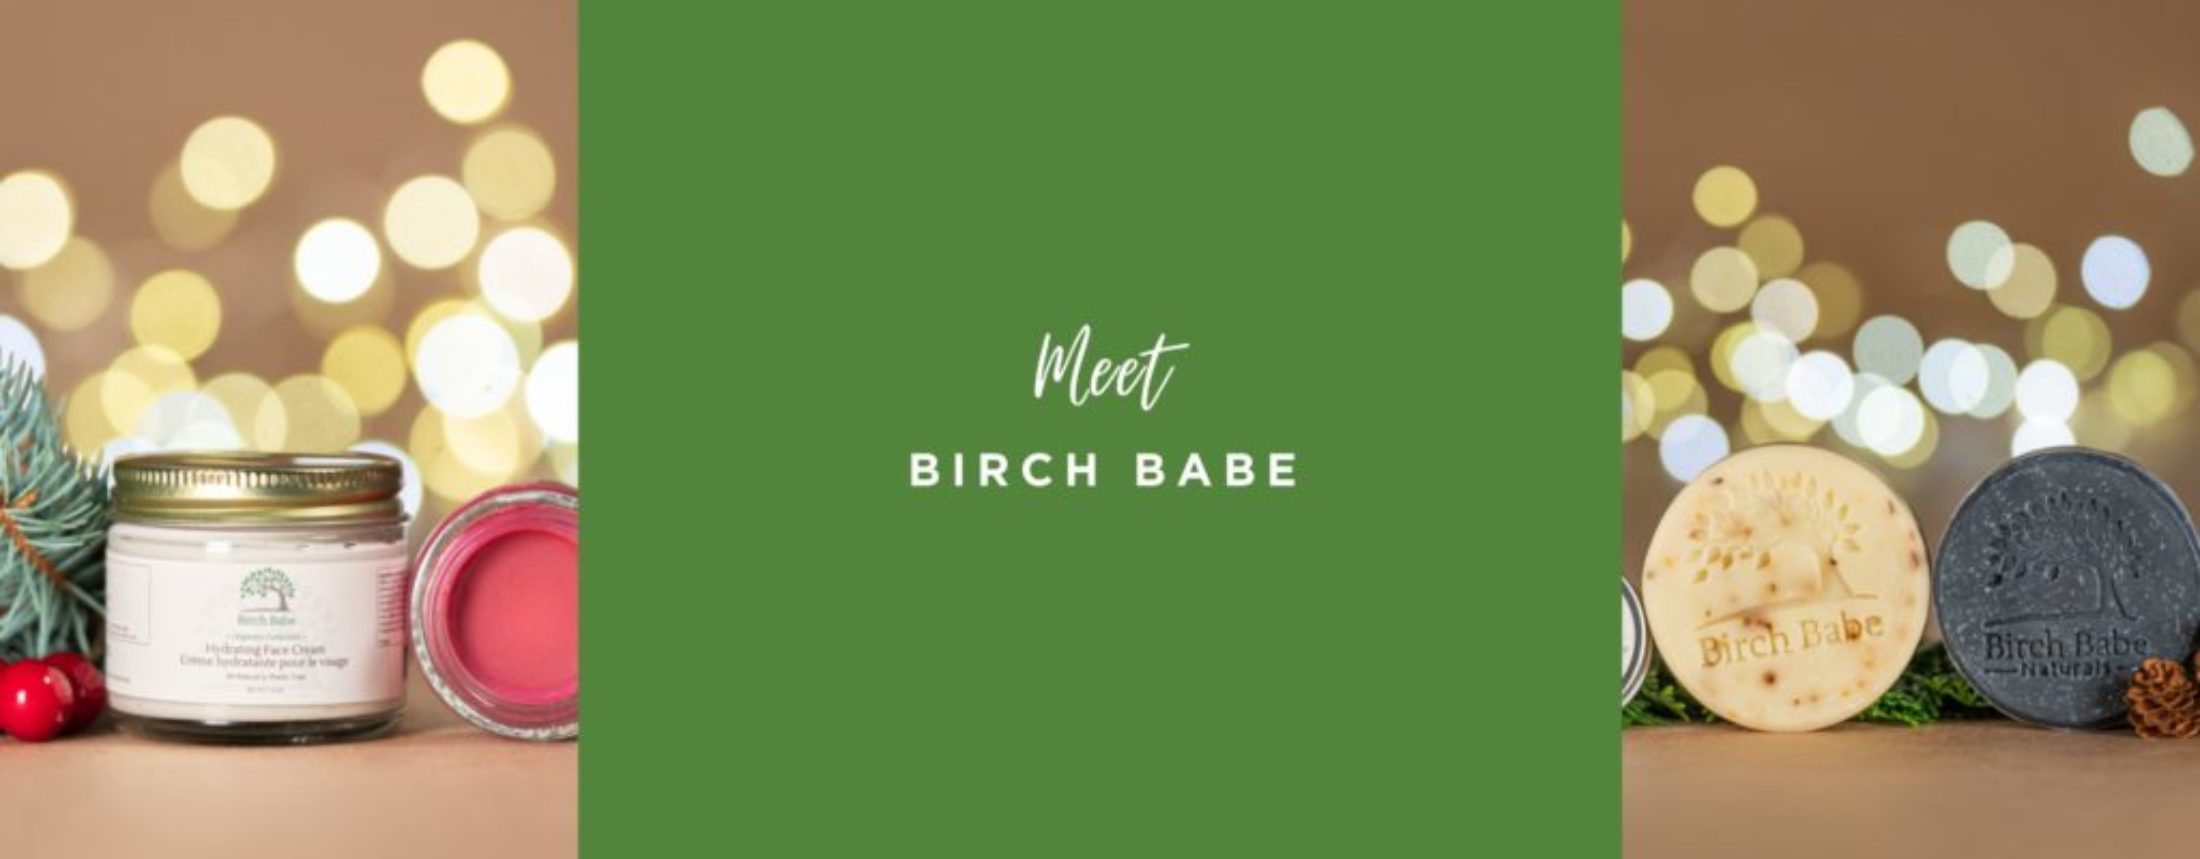 meet birch babe banner